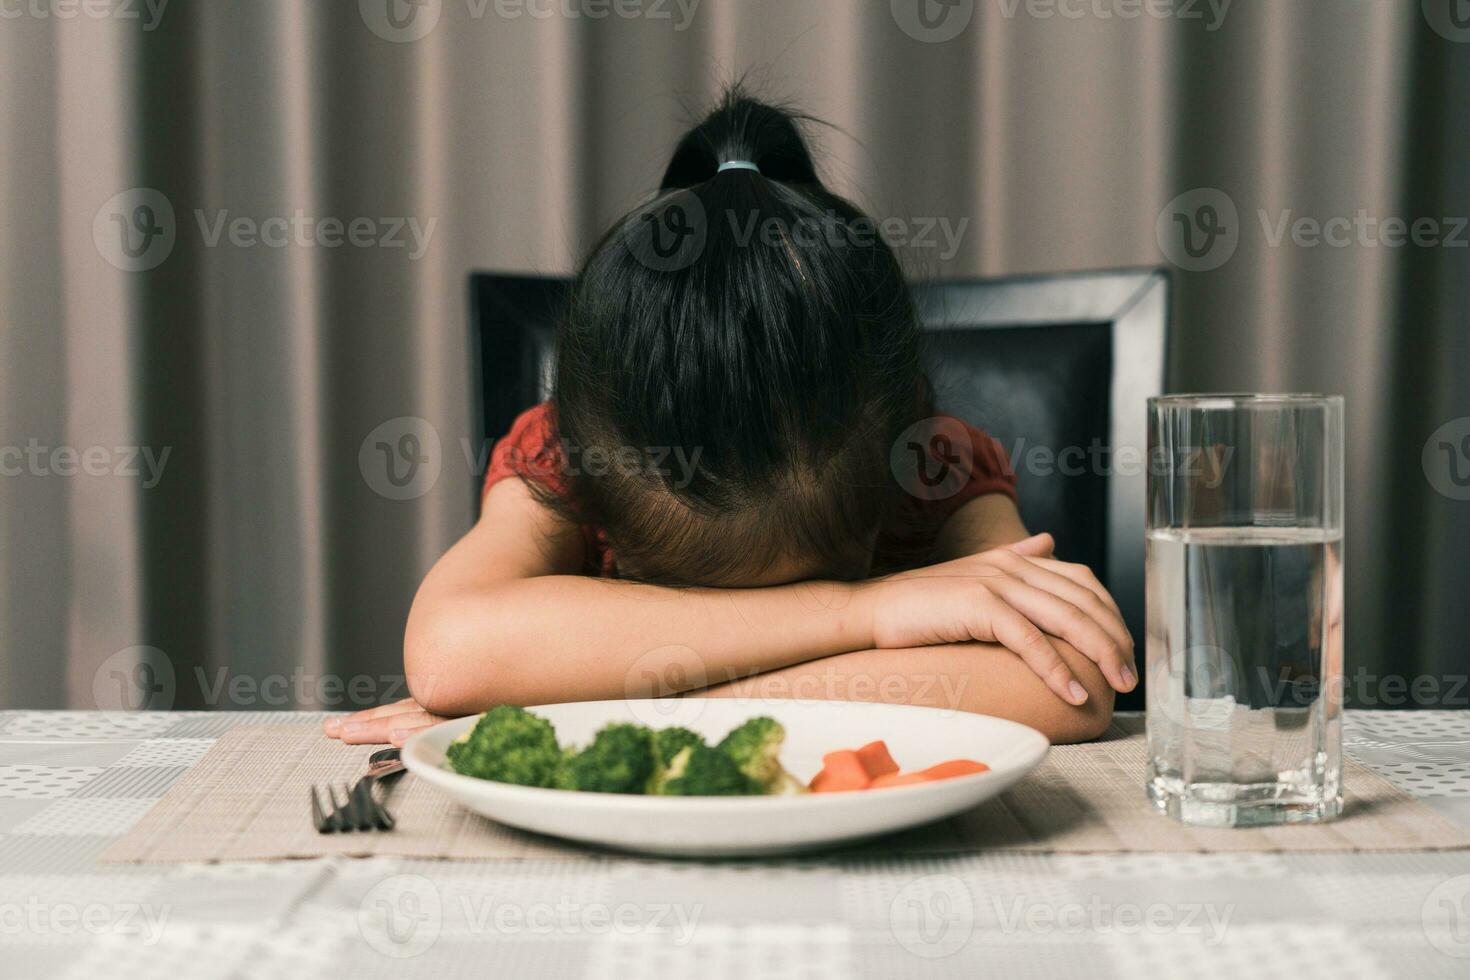 pequeno fofa criança menina recusando para comer saudável legumes. crianças Faz não gostar para comer legumes. foto